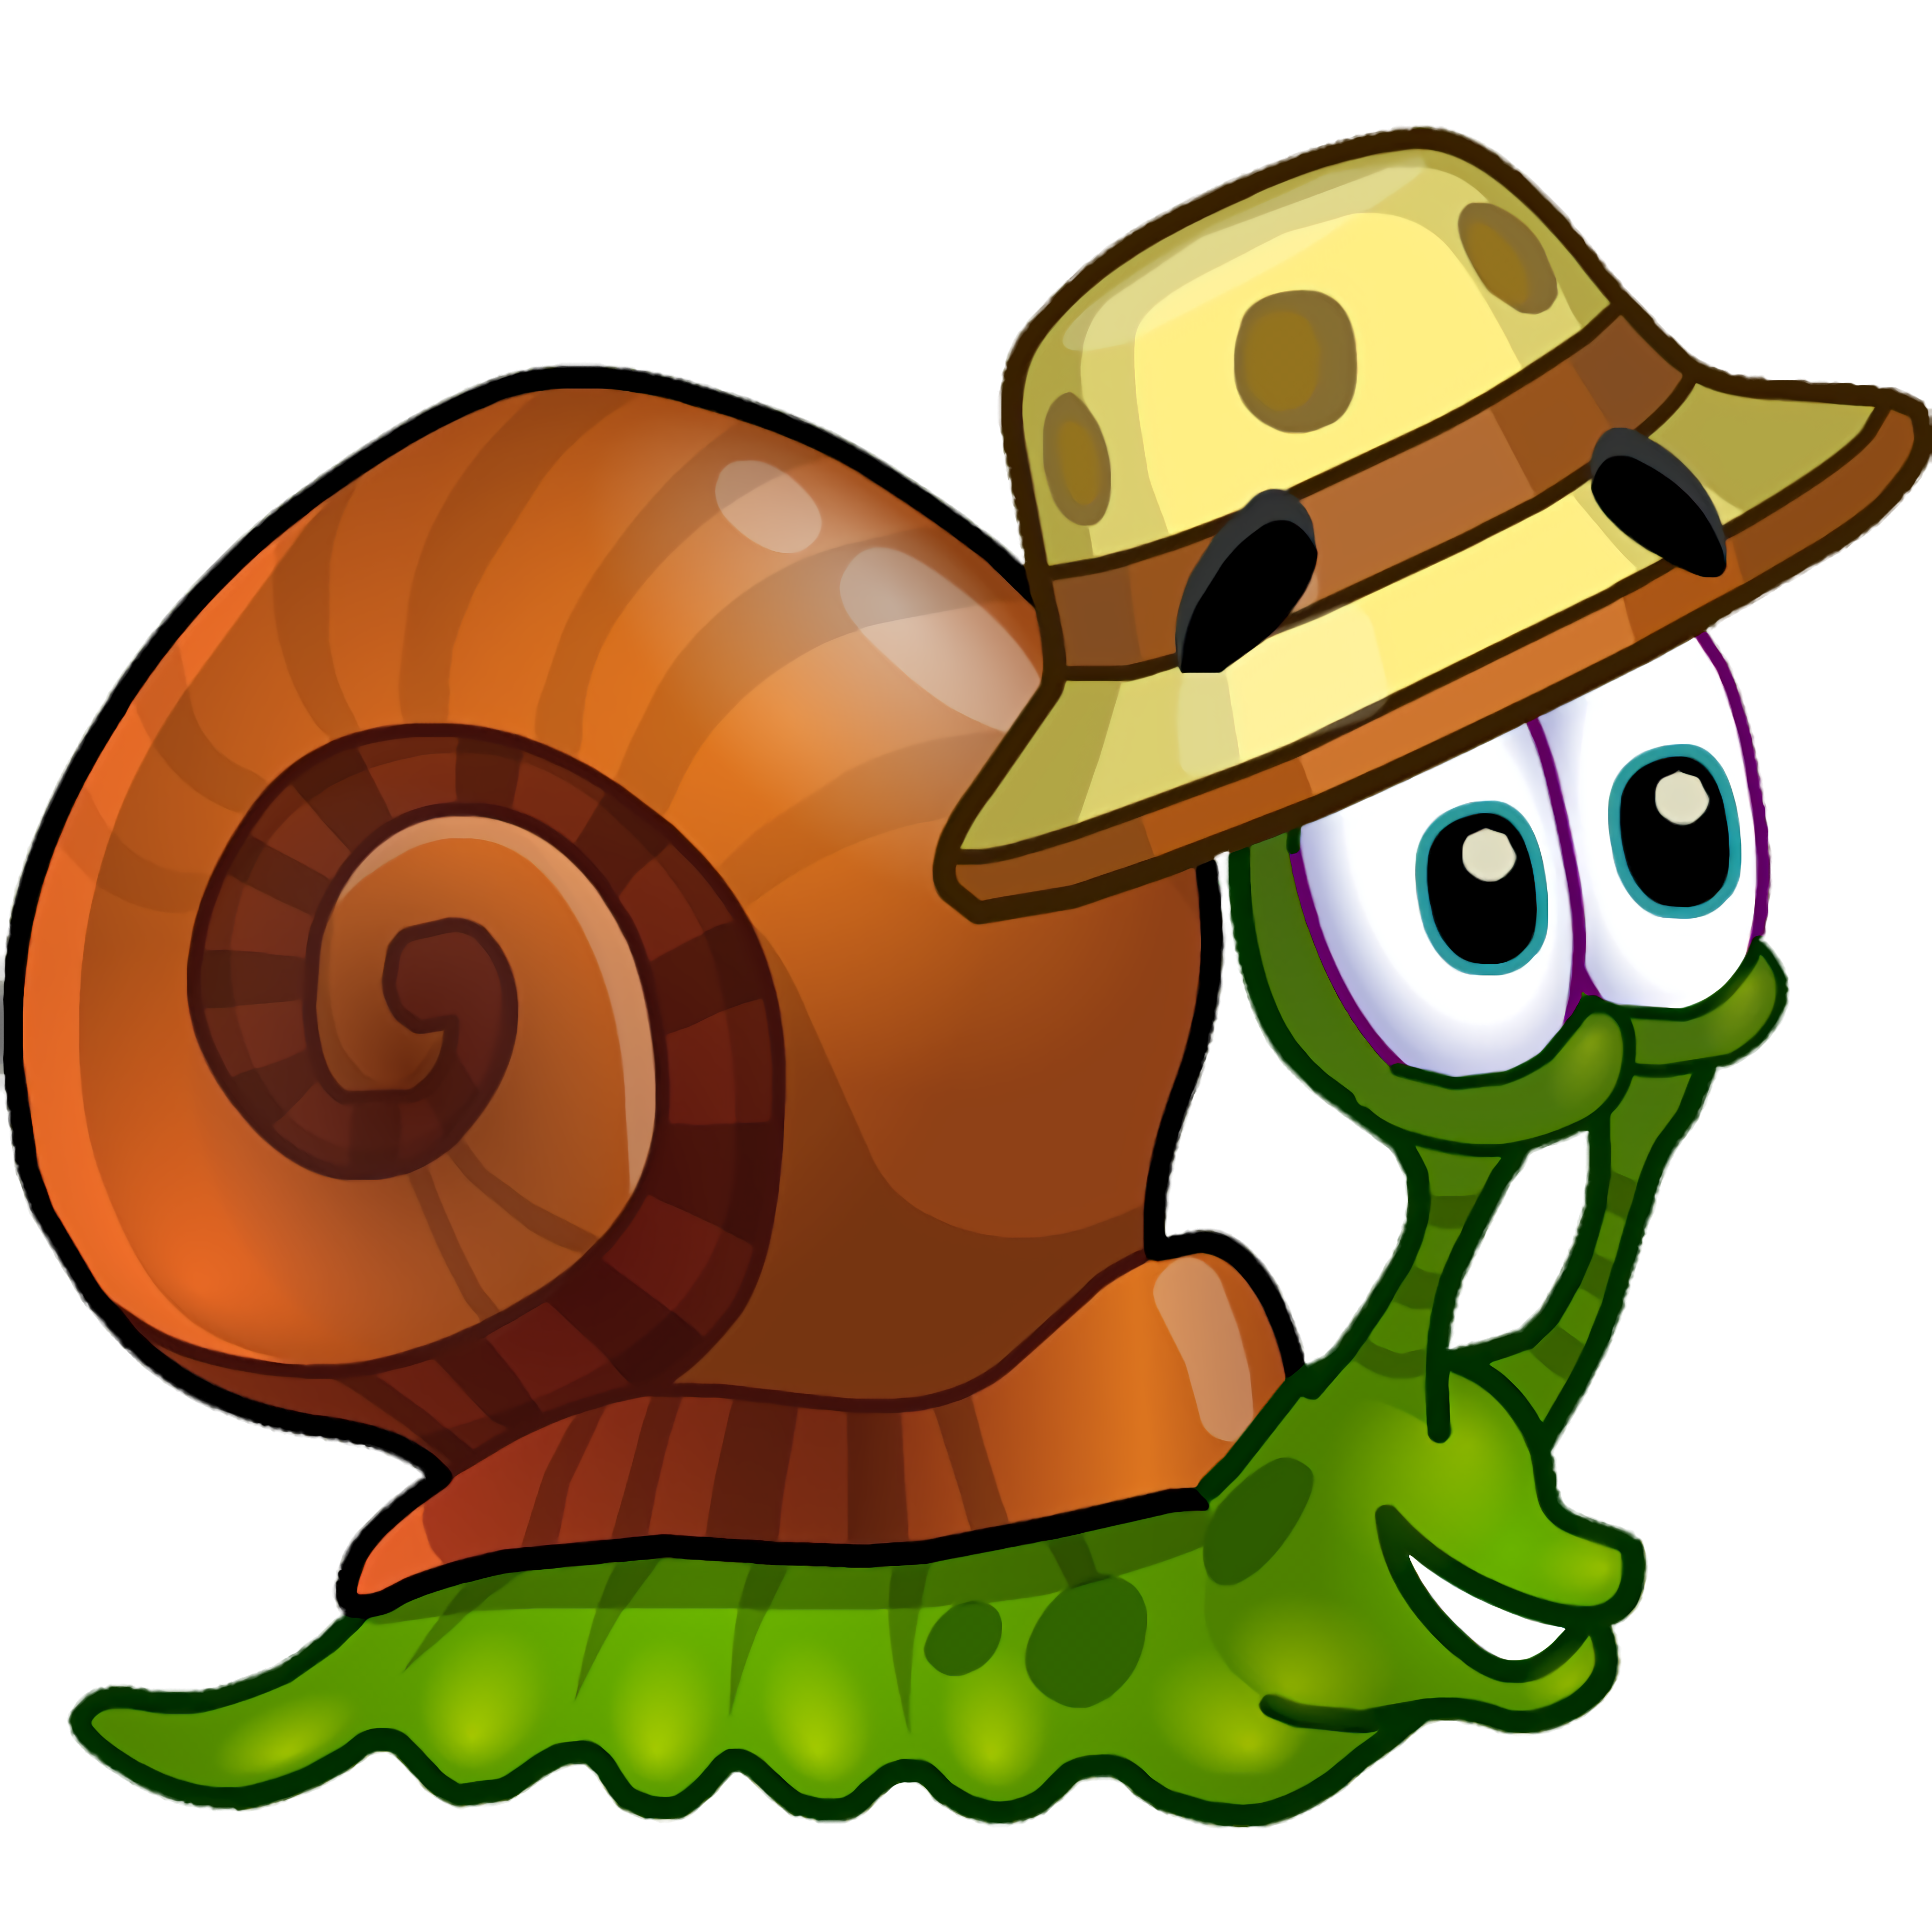 Улитка 3 часть. Улитка Боб 3 (Snail Bob 3). Снаил Боб. Snail Bob 2 (улитка Боб 2). Snail Bob (улитка Боб) 6.